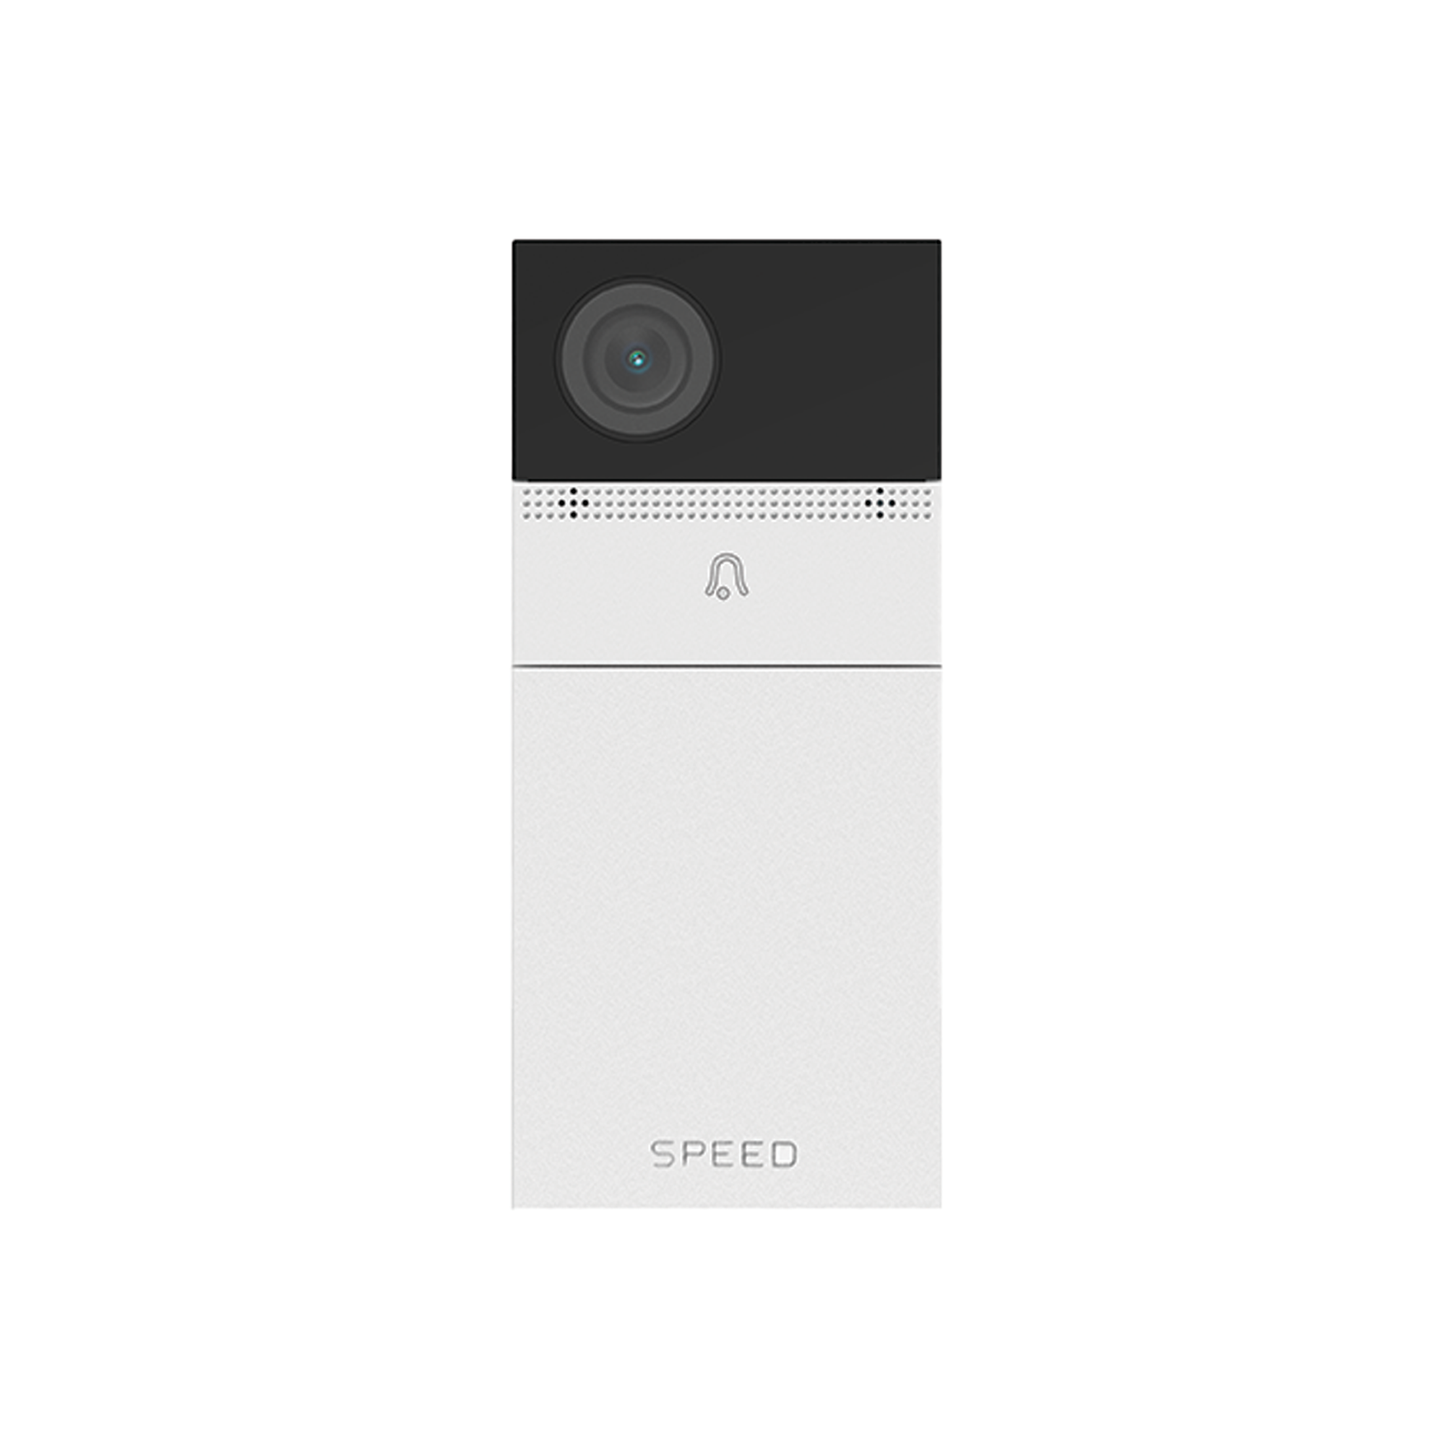 SPEED - 2K (2304x1296) Doorbell